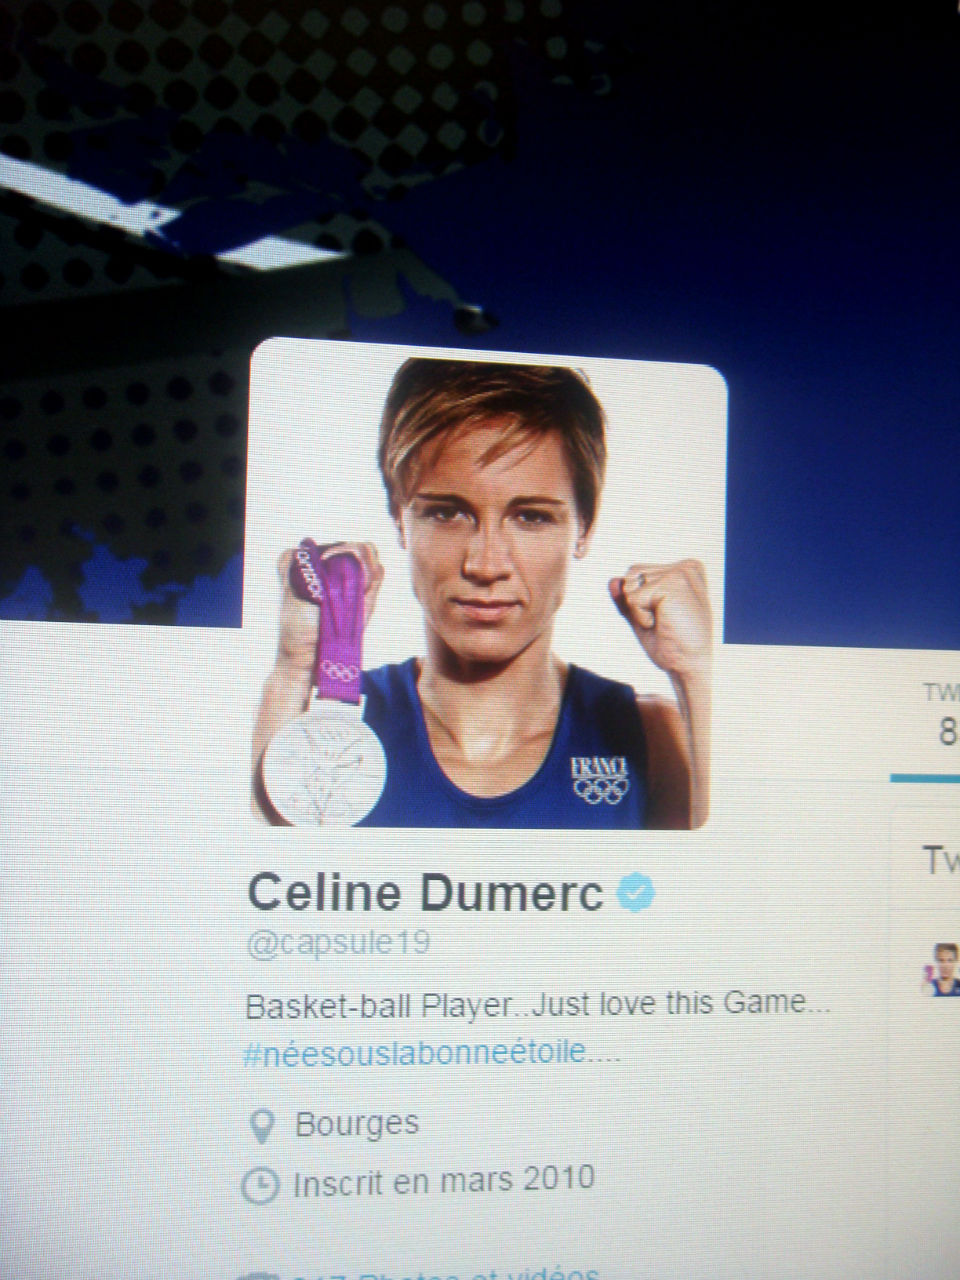 La basketteuse aux 58 000 followers partage sa vie sportive sur Twitter et beaucoup de photos avec son équipe ou la sélection française